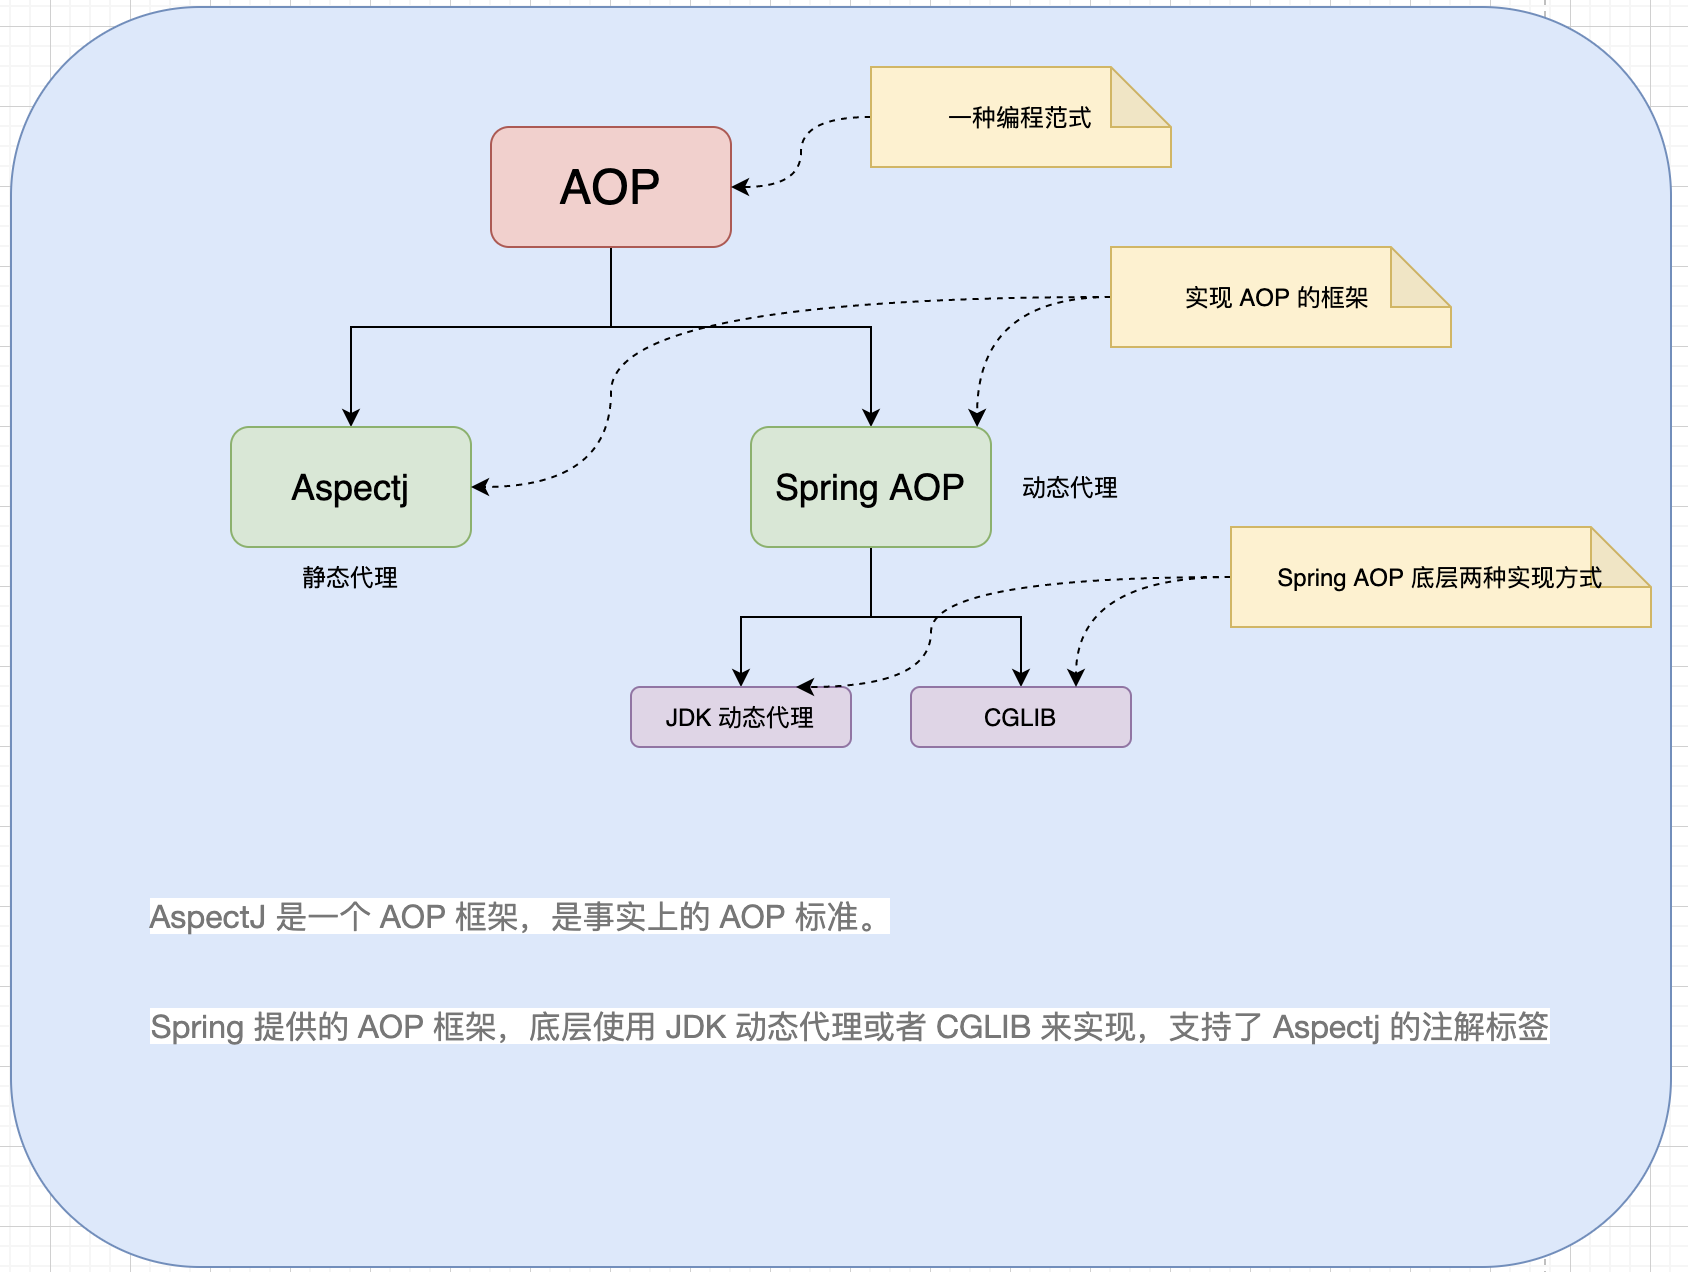 一图看懂 AOP，Spring AOP ，Aspectj，CGLIB  的关系